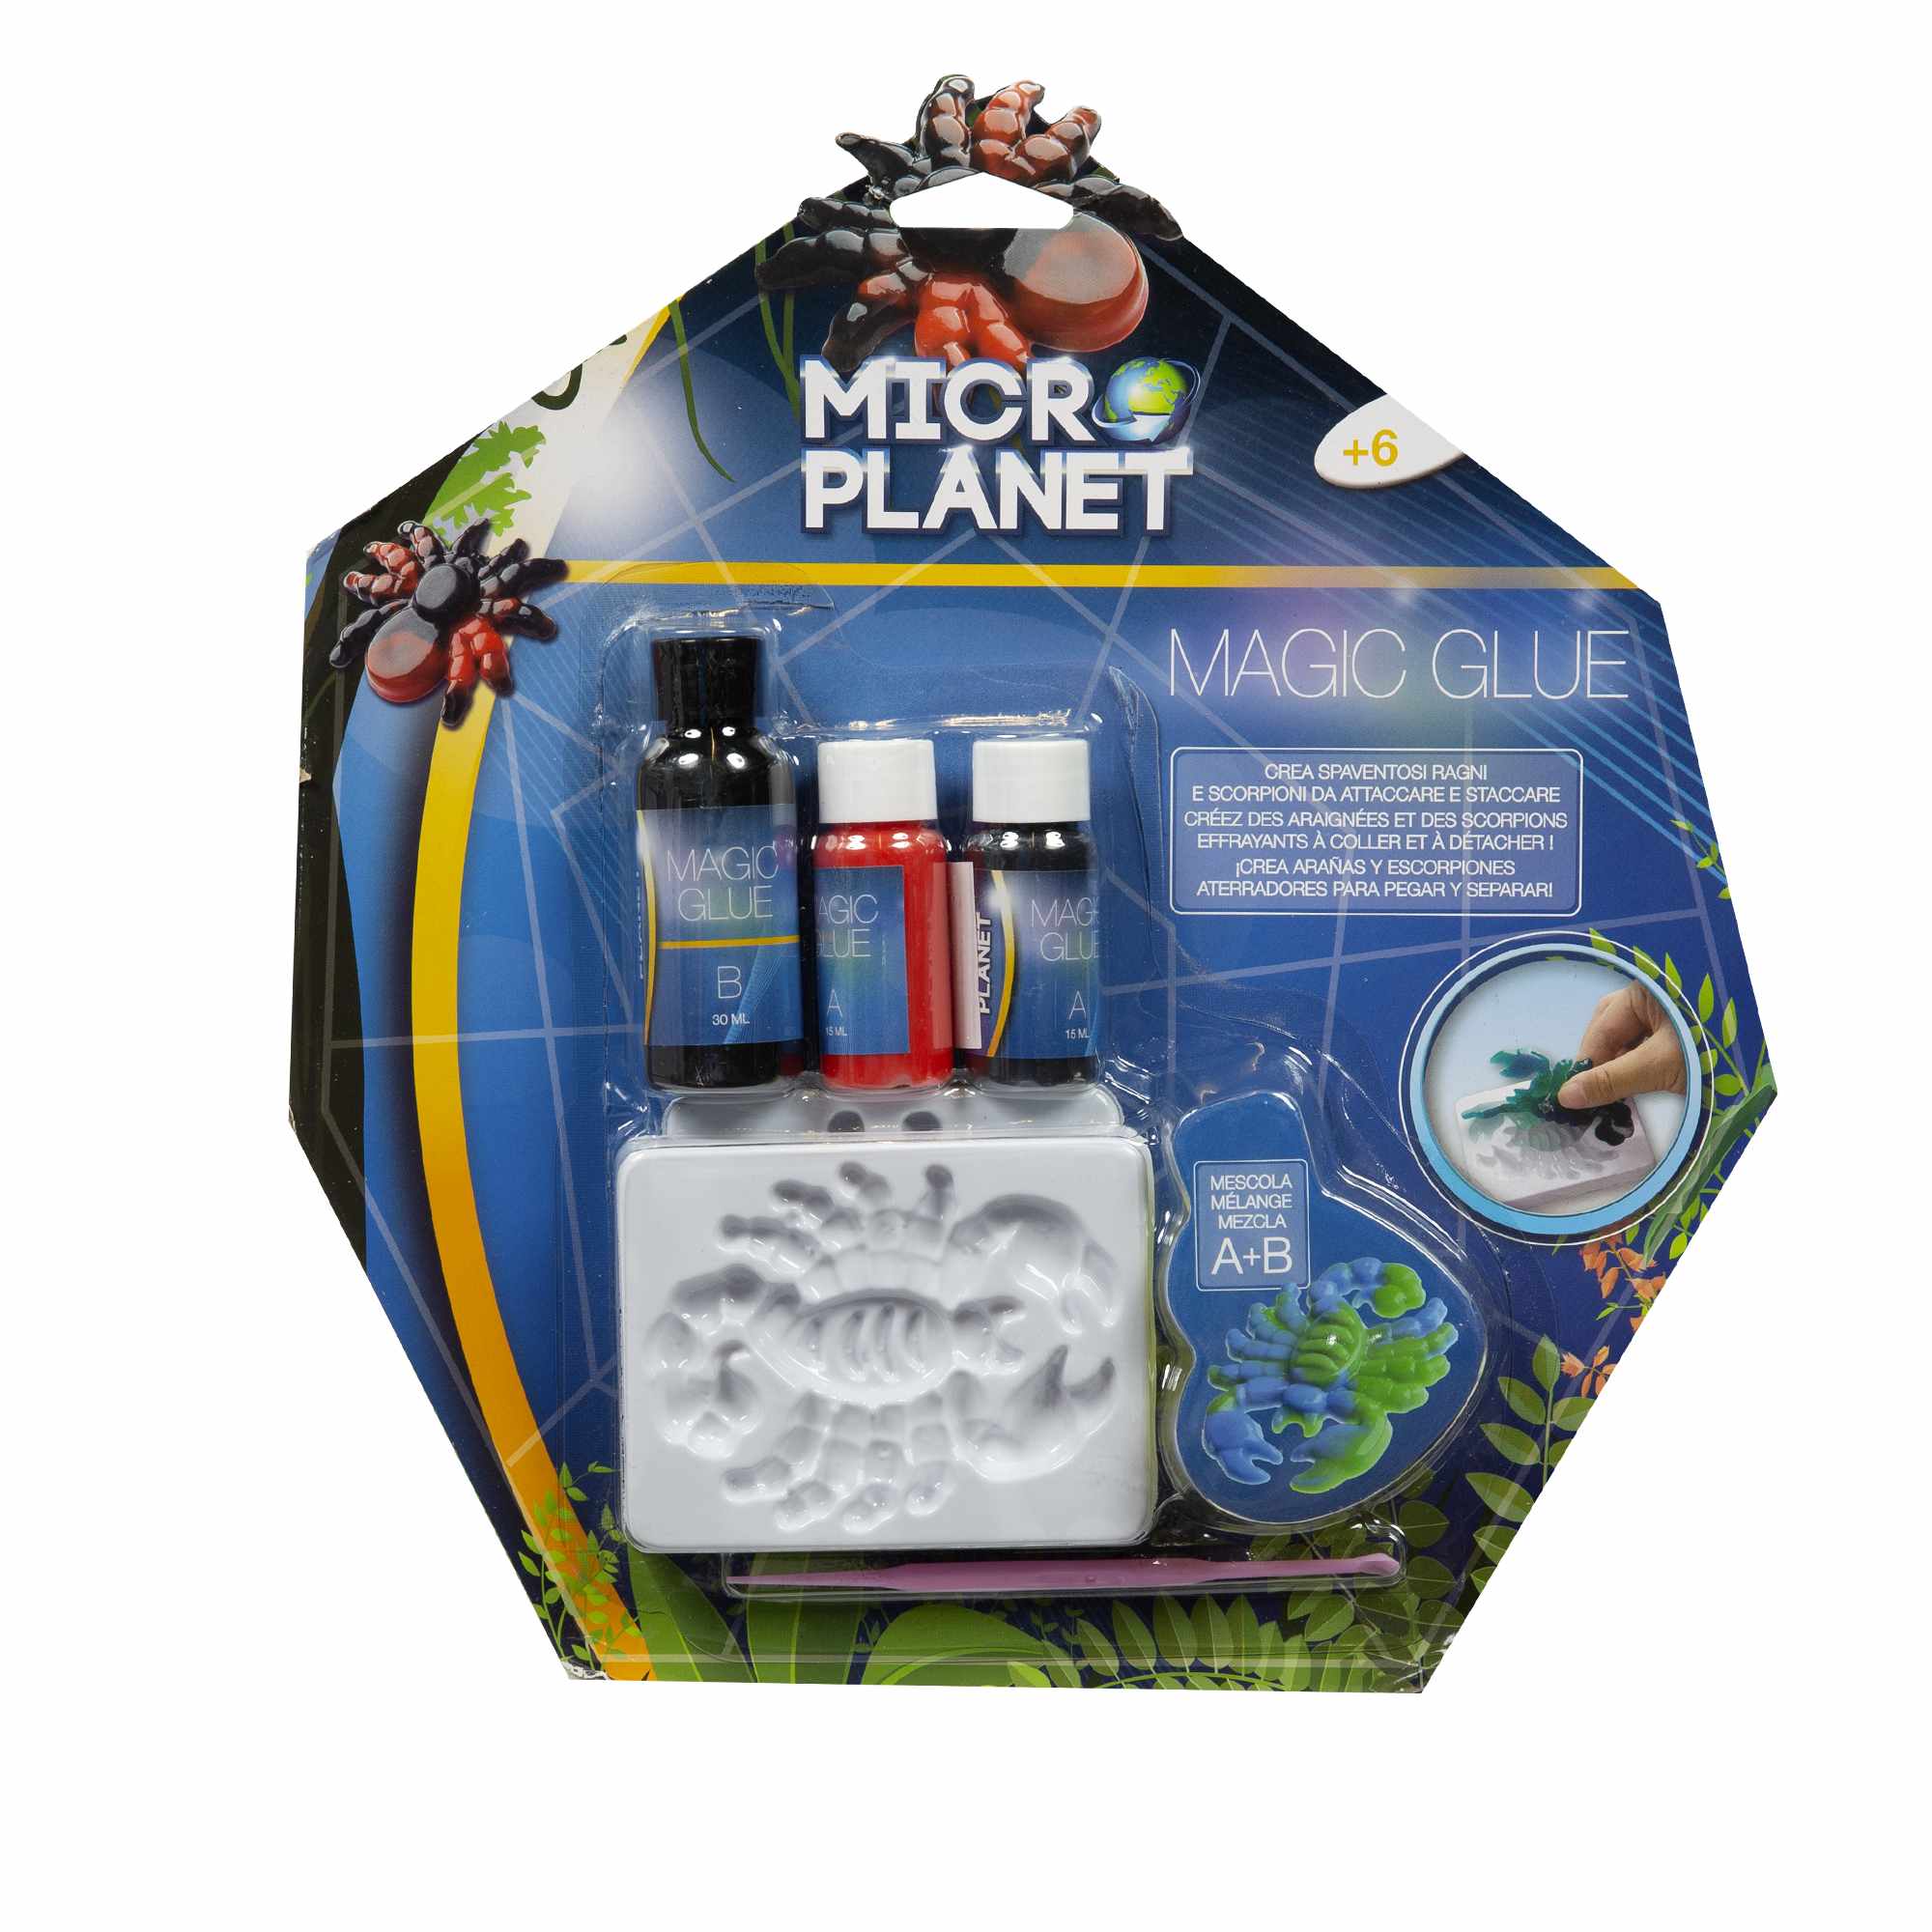 Magic glue - colla magica ragni e scorpioni - MICRO PLANET